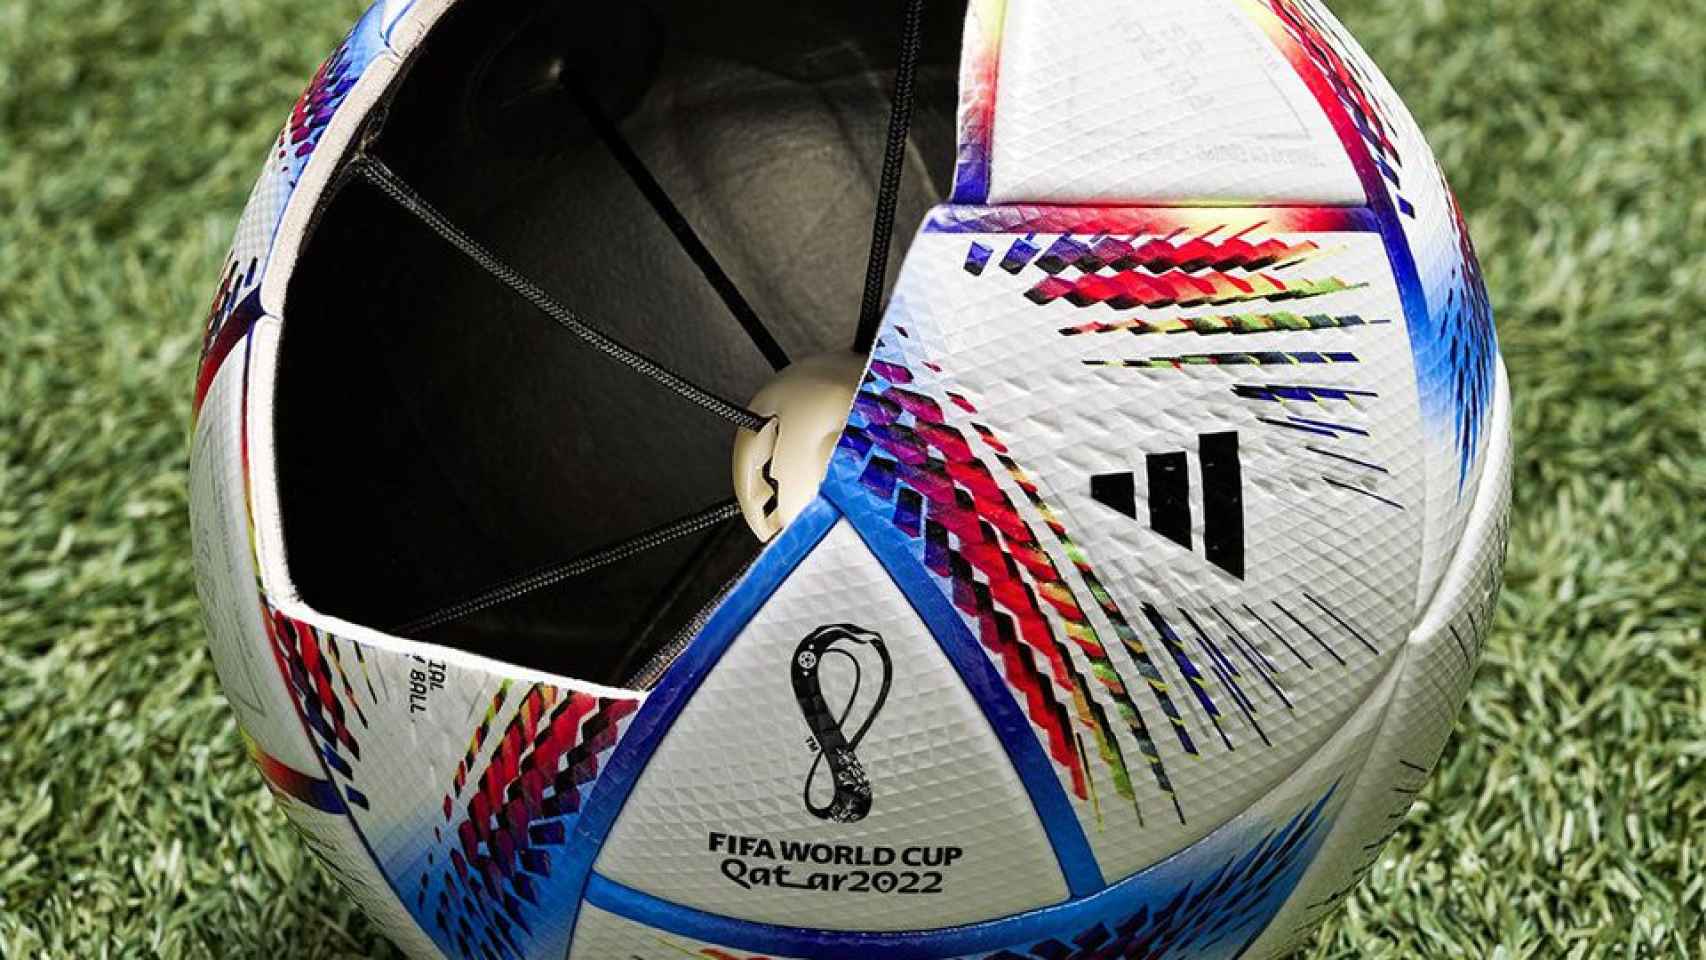 Destilar Endulzar profundo Al Rihla, el balón futurista con fines benéficos que usan la FIFA y Qatar  para limpiar su imagen